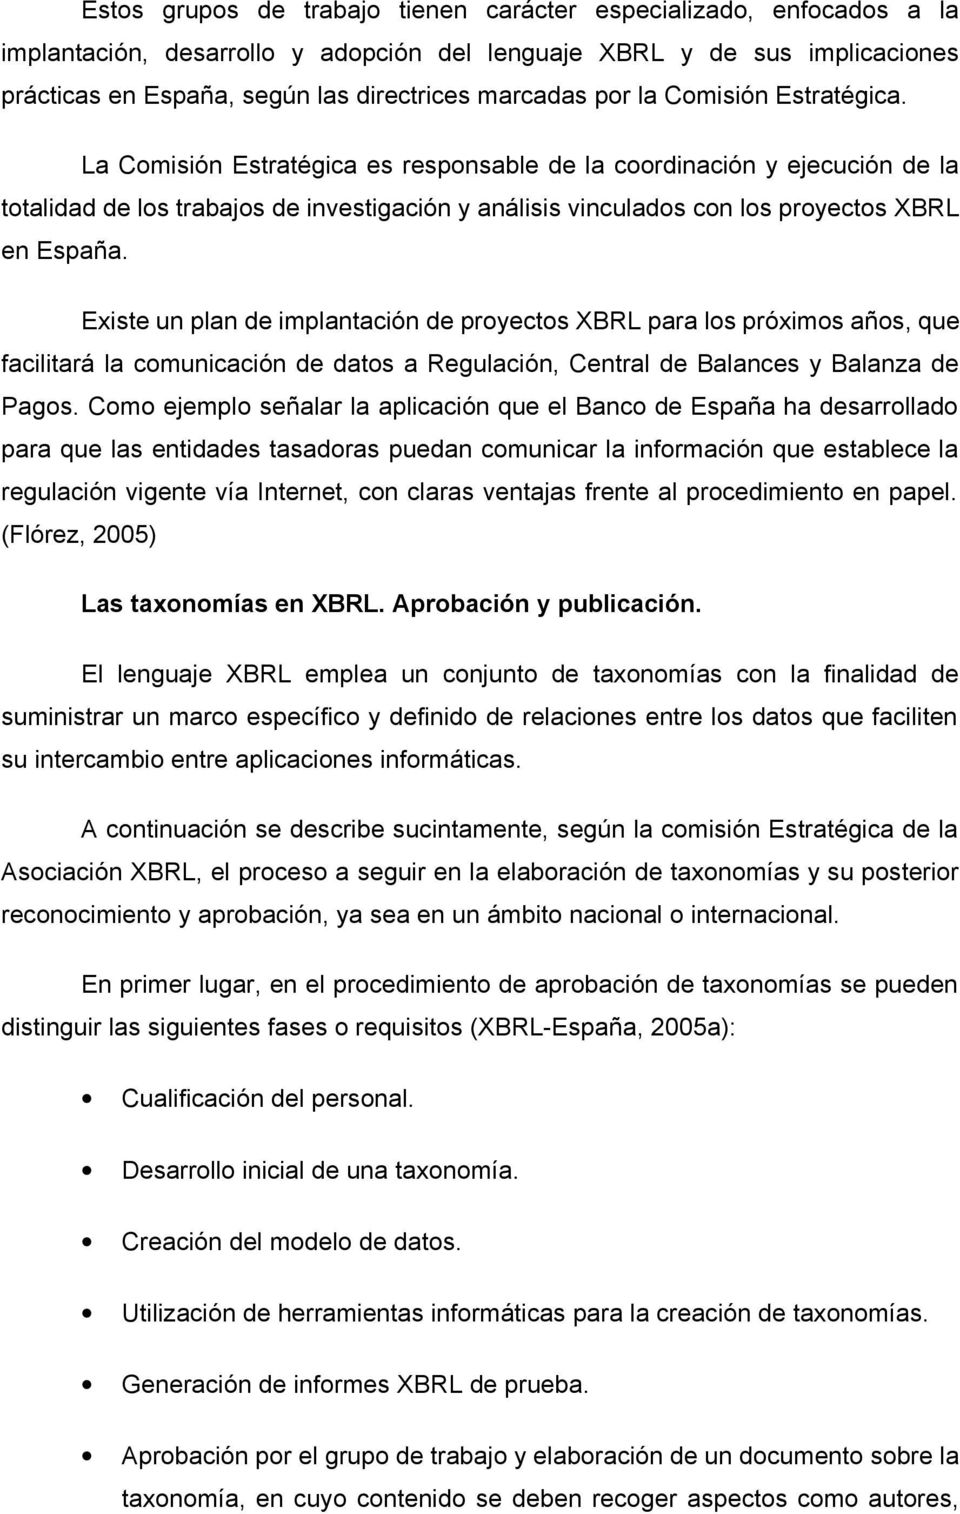 La Comisión Estratégica es responsable de la coordinación y ejecución de la totalidad de los trabajos de investigación y análisis vinculados con los proyectos XBRL en España.